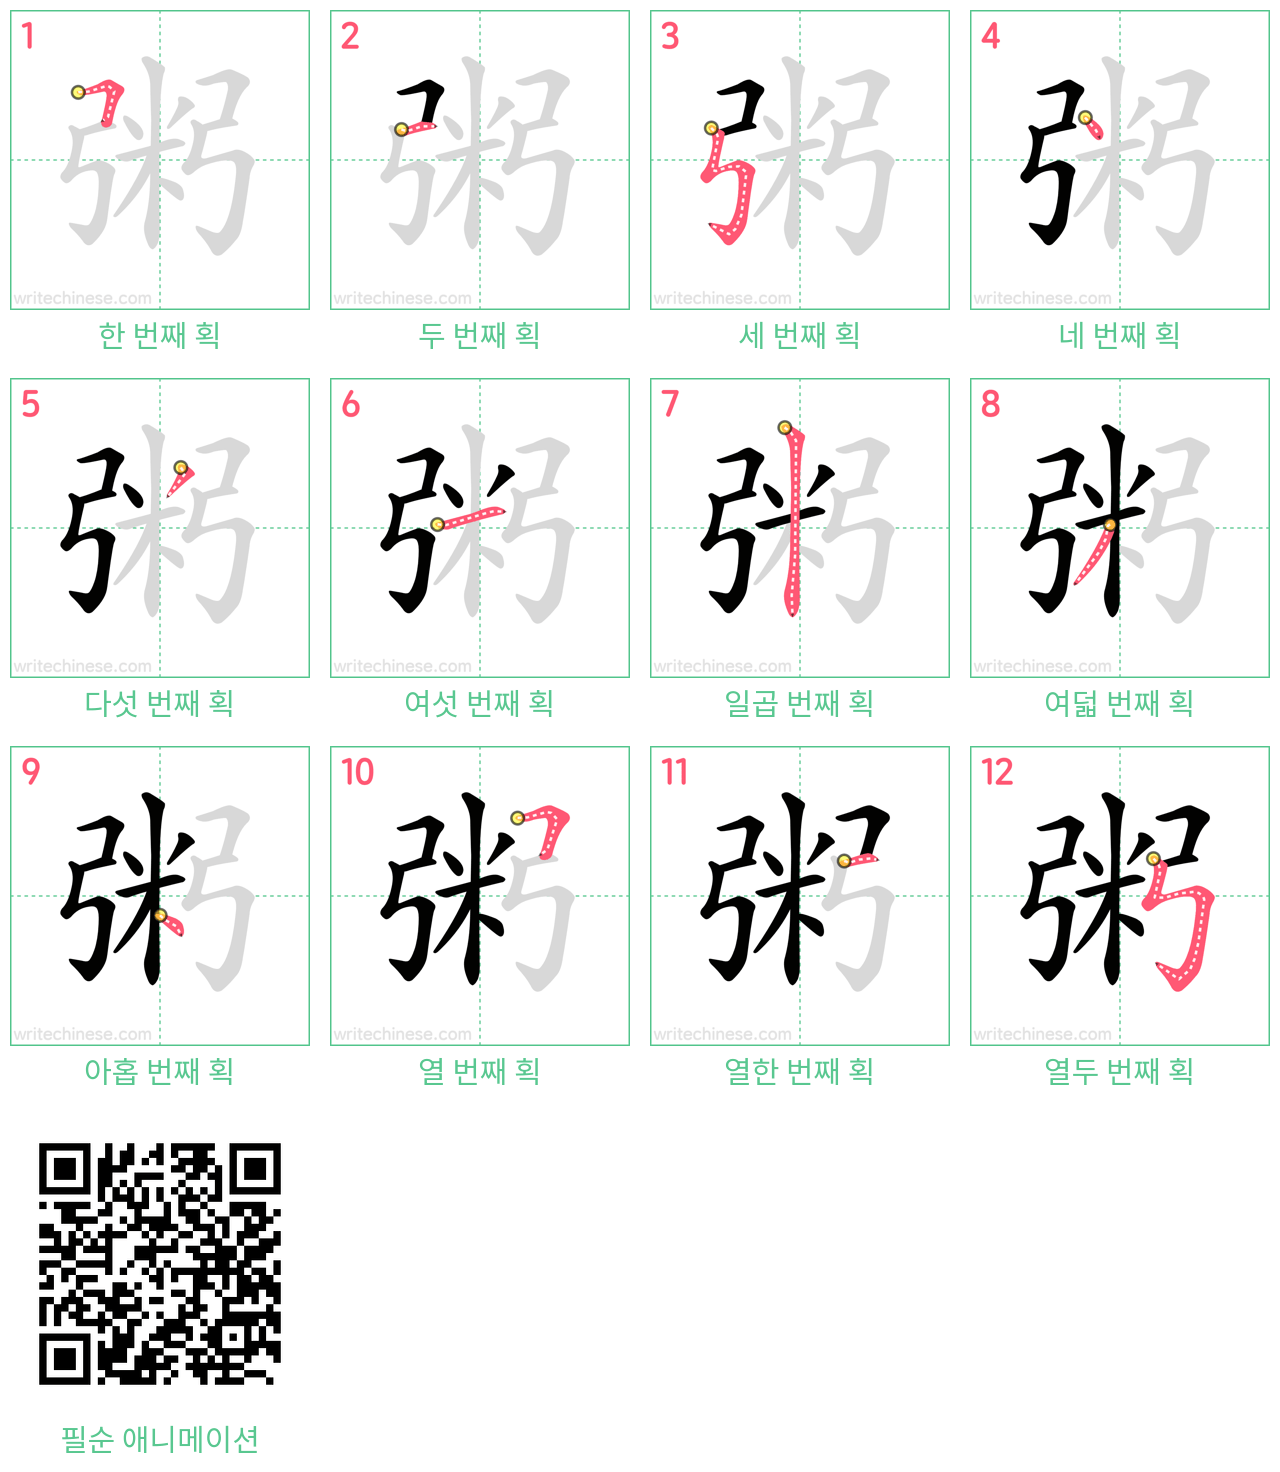 粥 step-by-step stroke order diagrams